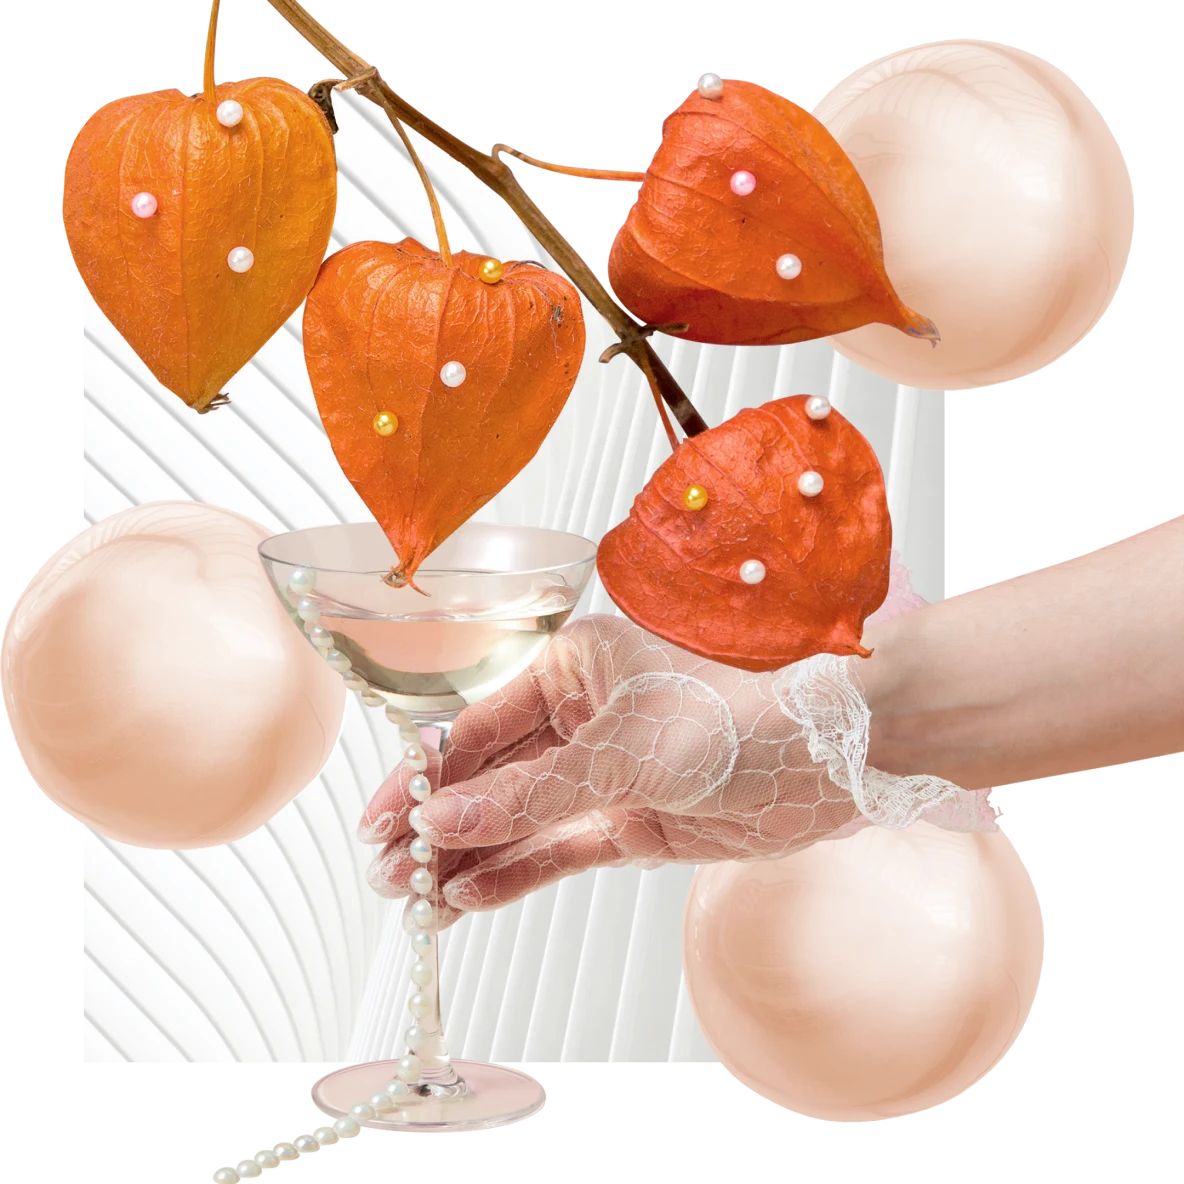 Vier orangefarbene Physalishülsen an einem dünnen Zweig. Im Hintergrund drei lichtdurchlässige orangefarbene Perlen, eine Hand in einem Spitzenhandschuh mit Martiniglas sowie eine Perlenschnur und ein weißes Fächermuster.
